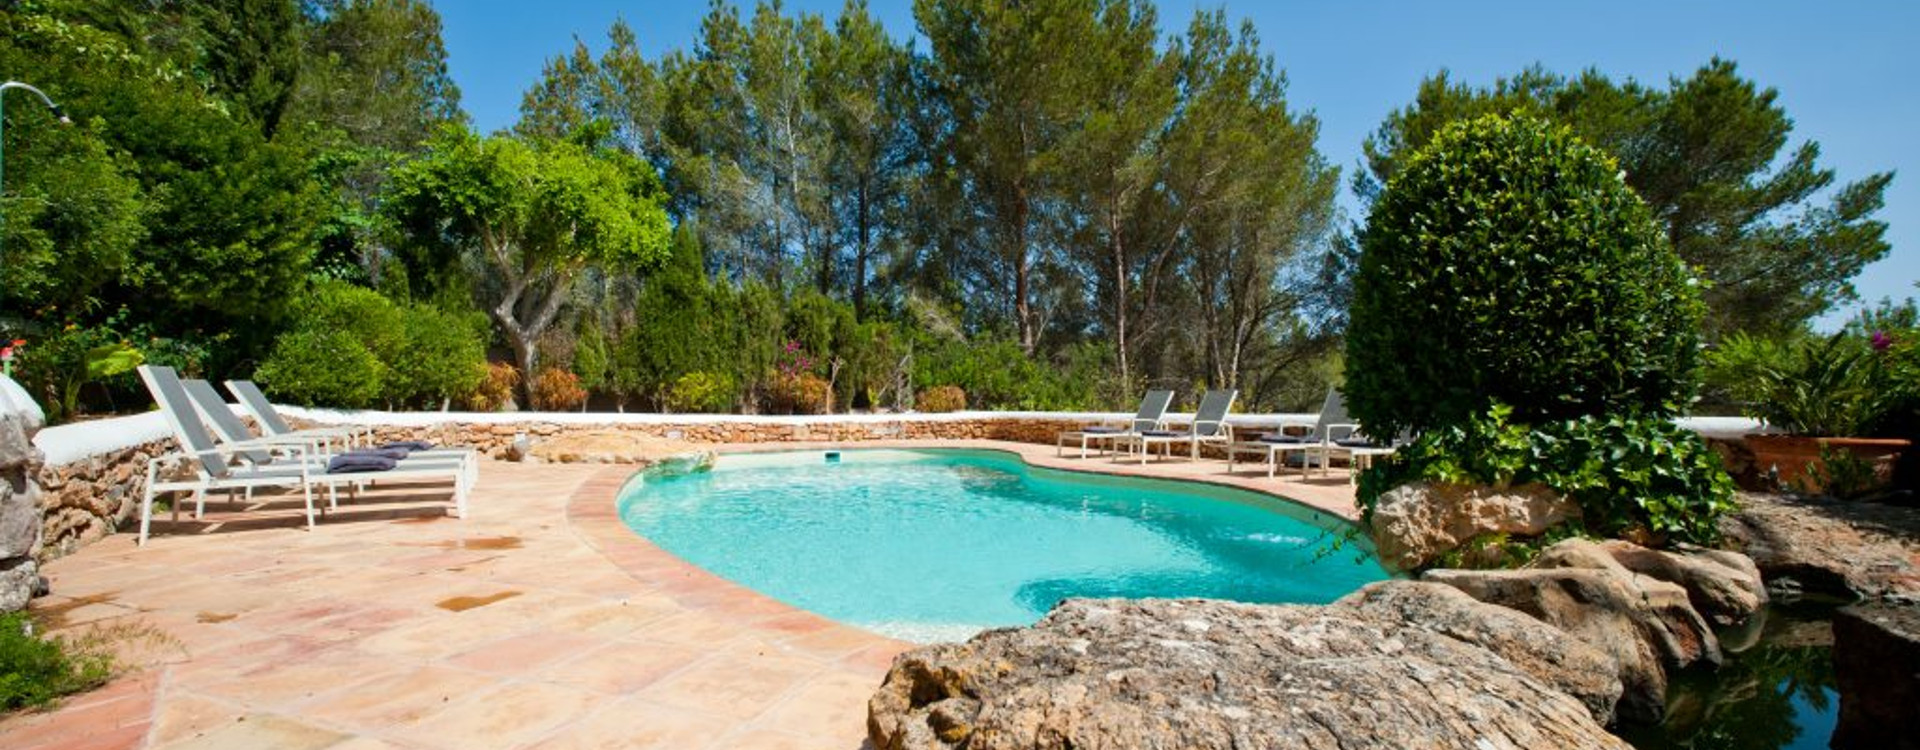 Ibiza villa with private pool